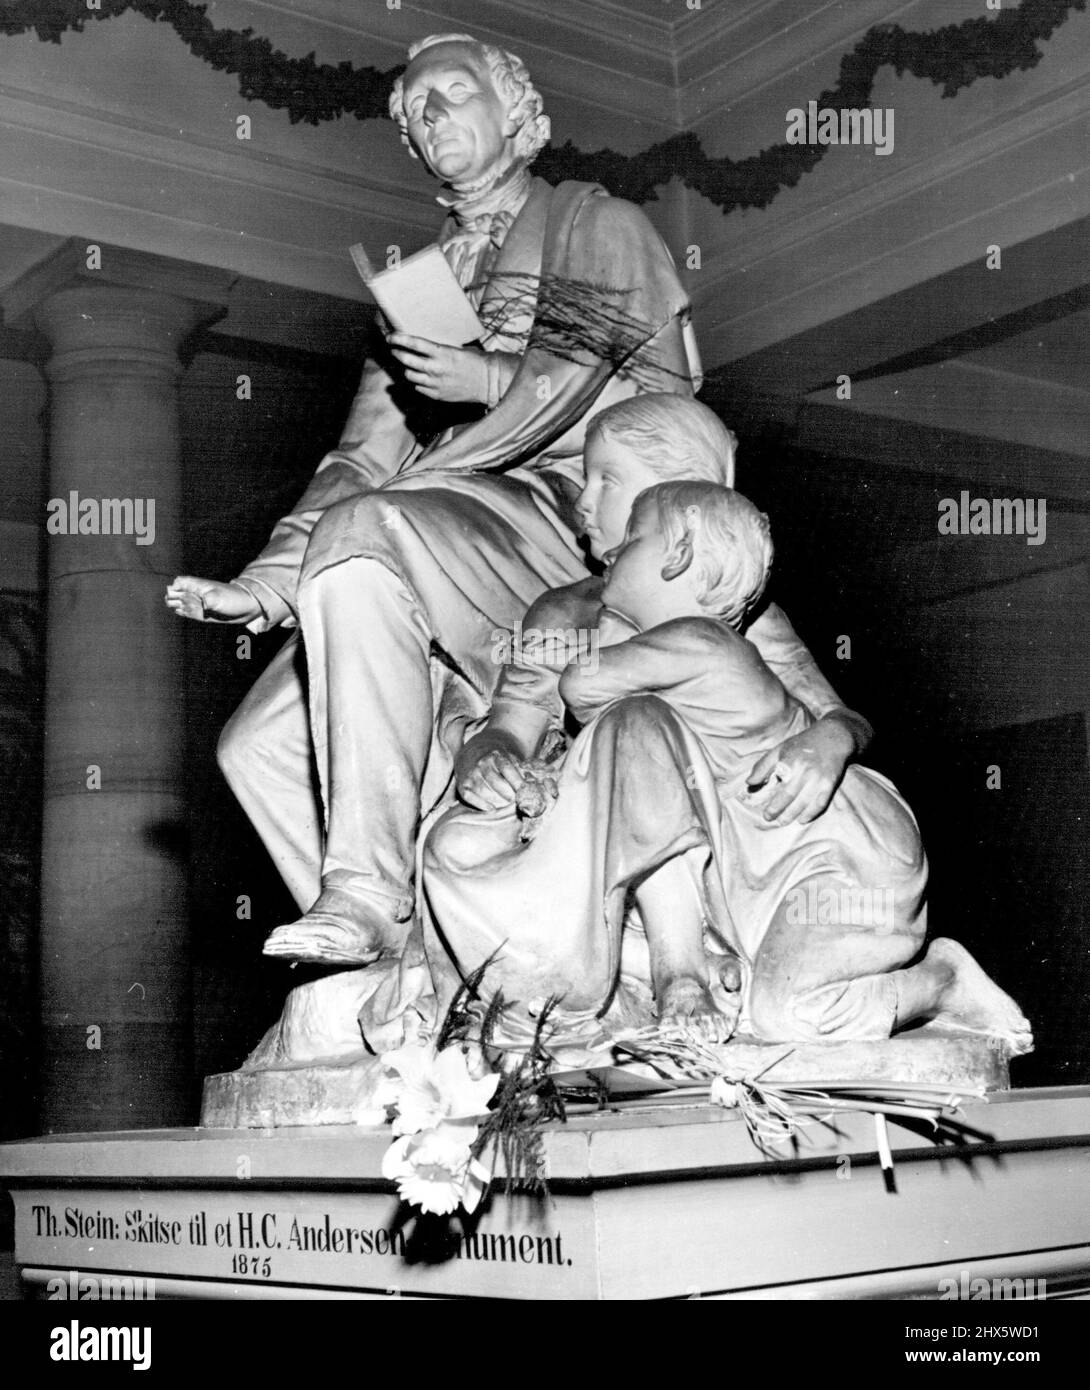 Danes Honor Favourite Son -- Hans Christian Andersen, einer der beliebtesten Märchenerzähler der Welt, wird mit dieser wunderschönen Statue in einem Museum in der Nähe seines Geburtshauses in Odense, Dänemark, gedenkt. 11. April 1952. (Foto von United Press Photo). Stockfoto